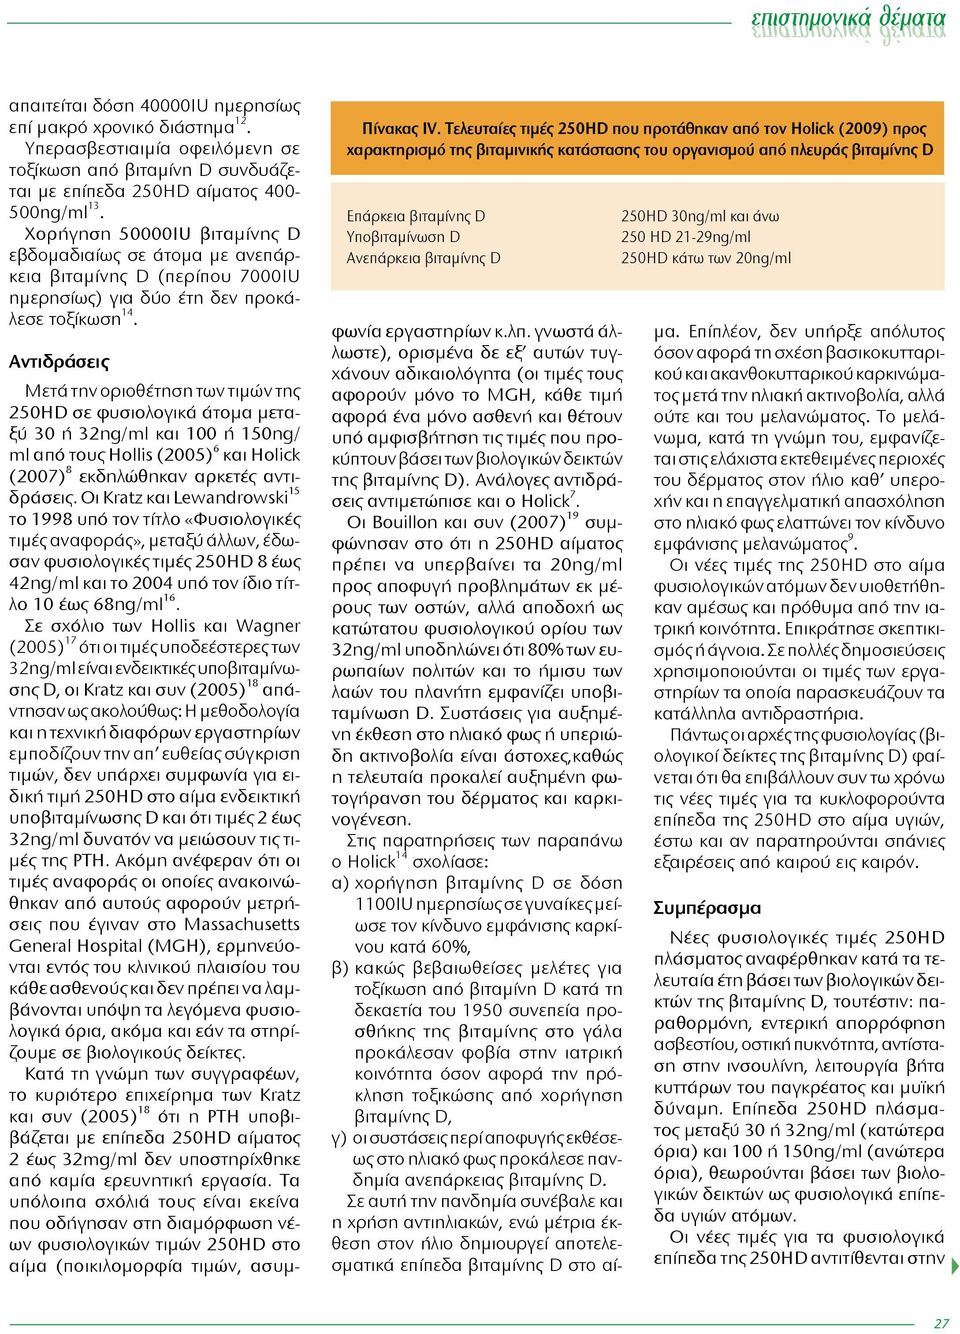 Τελευταίες τιμές 250HD που προτάθηκαν από τον Ηolick (2009) προς χαρακτηρισμό της βιταμινικής κατάστασης του οργανισμού από πλευράς βιταμίνης D Επάρκεια βιταμίνης D Υποβιταμίνωση D Ανεπάρκεια